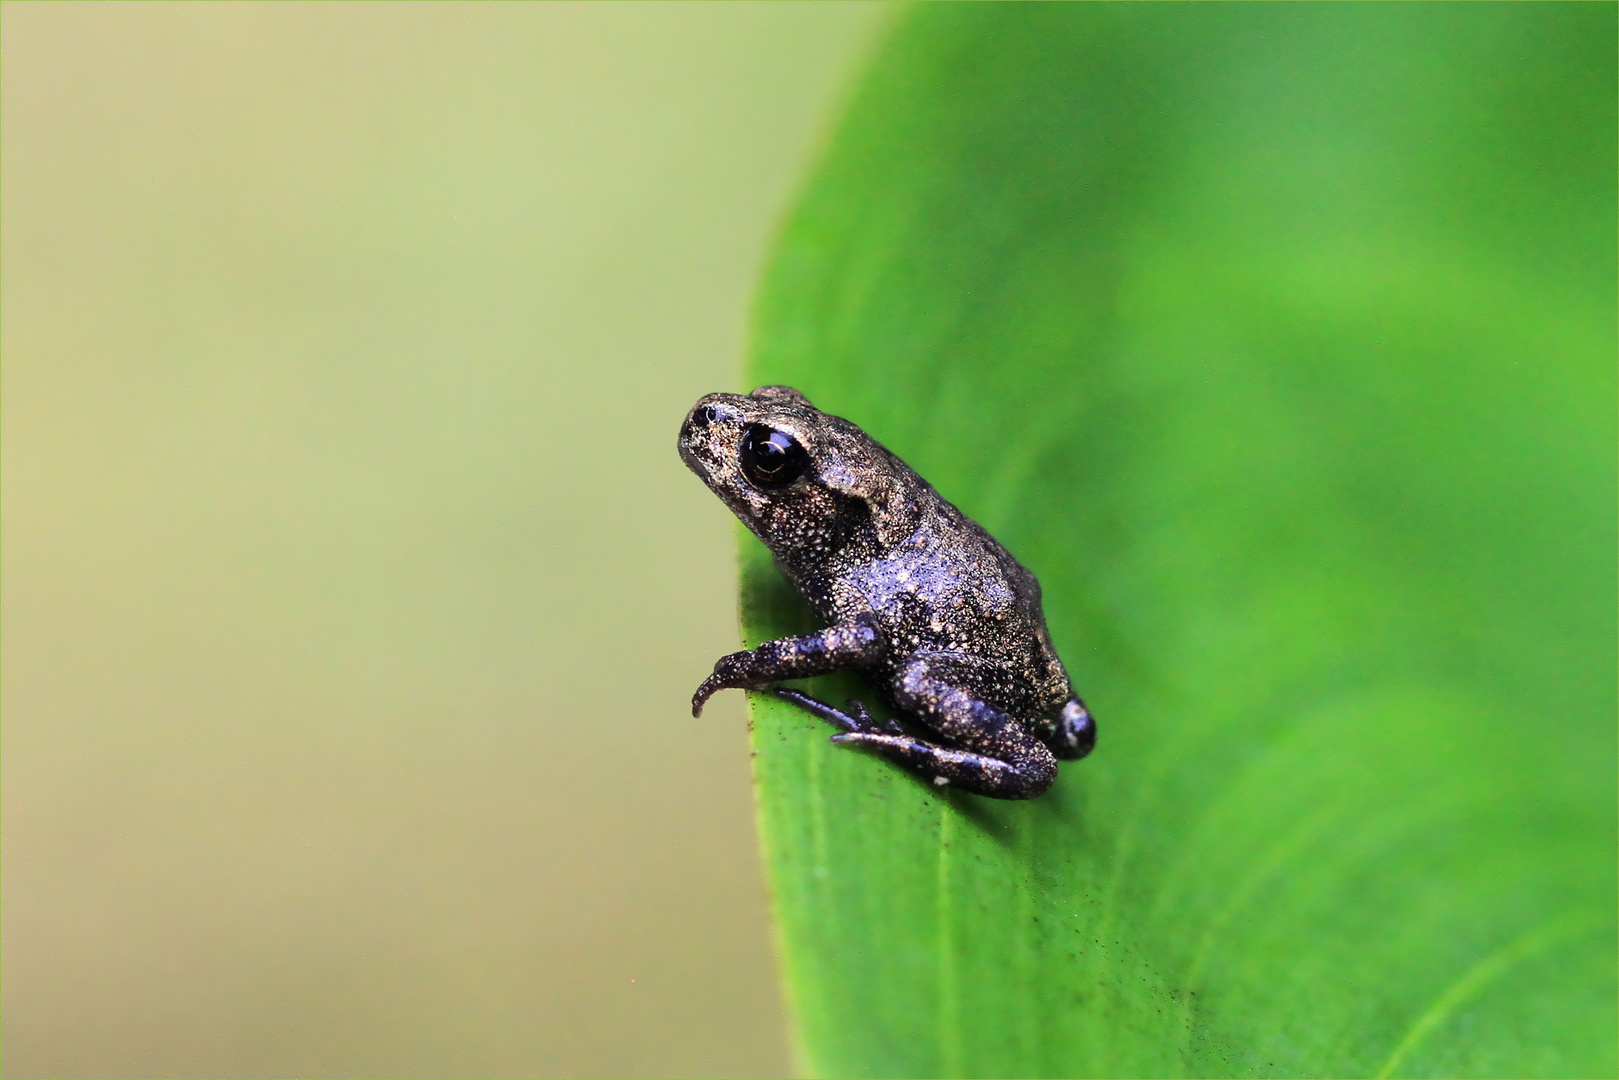 Kantenhocker - junger Frosch auf einem Blatt